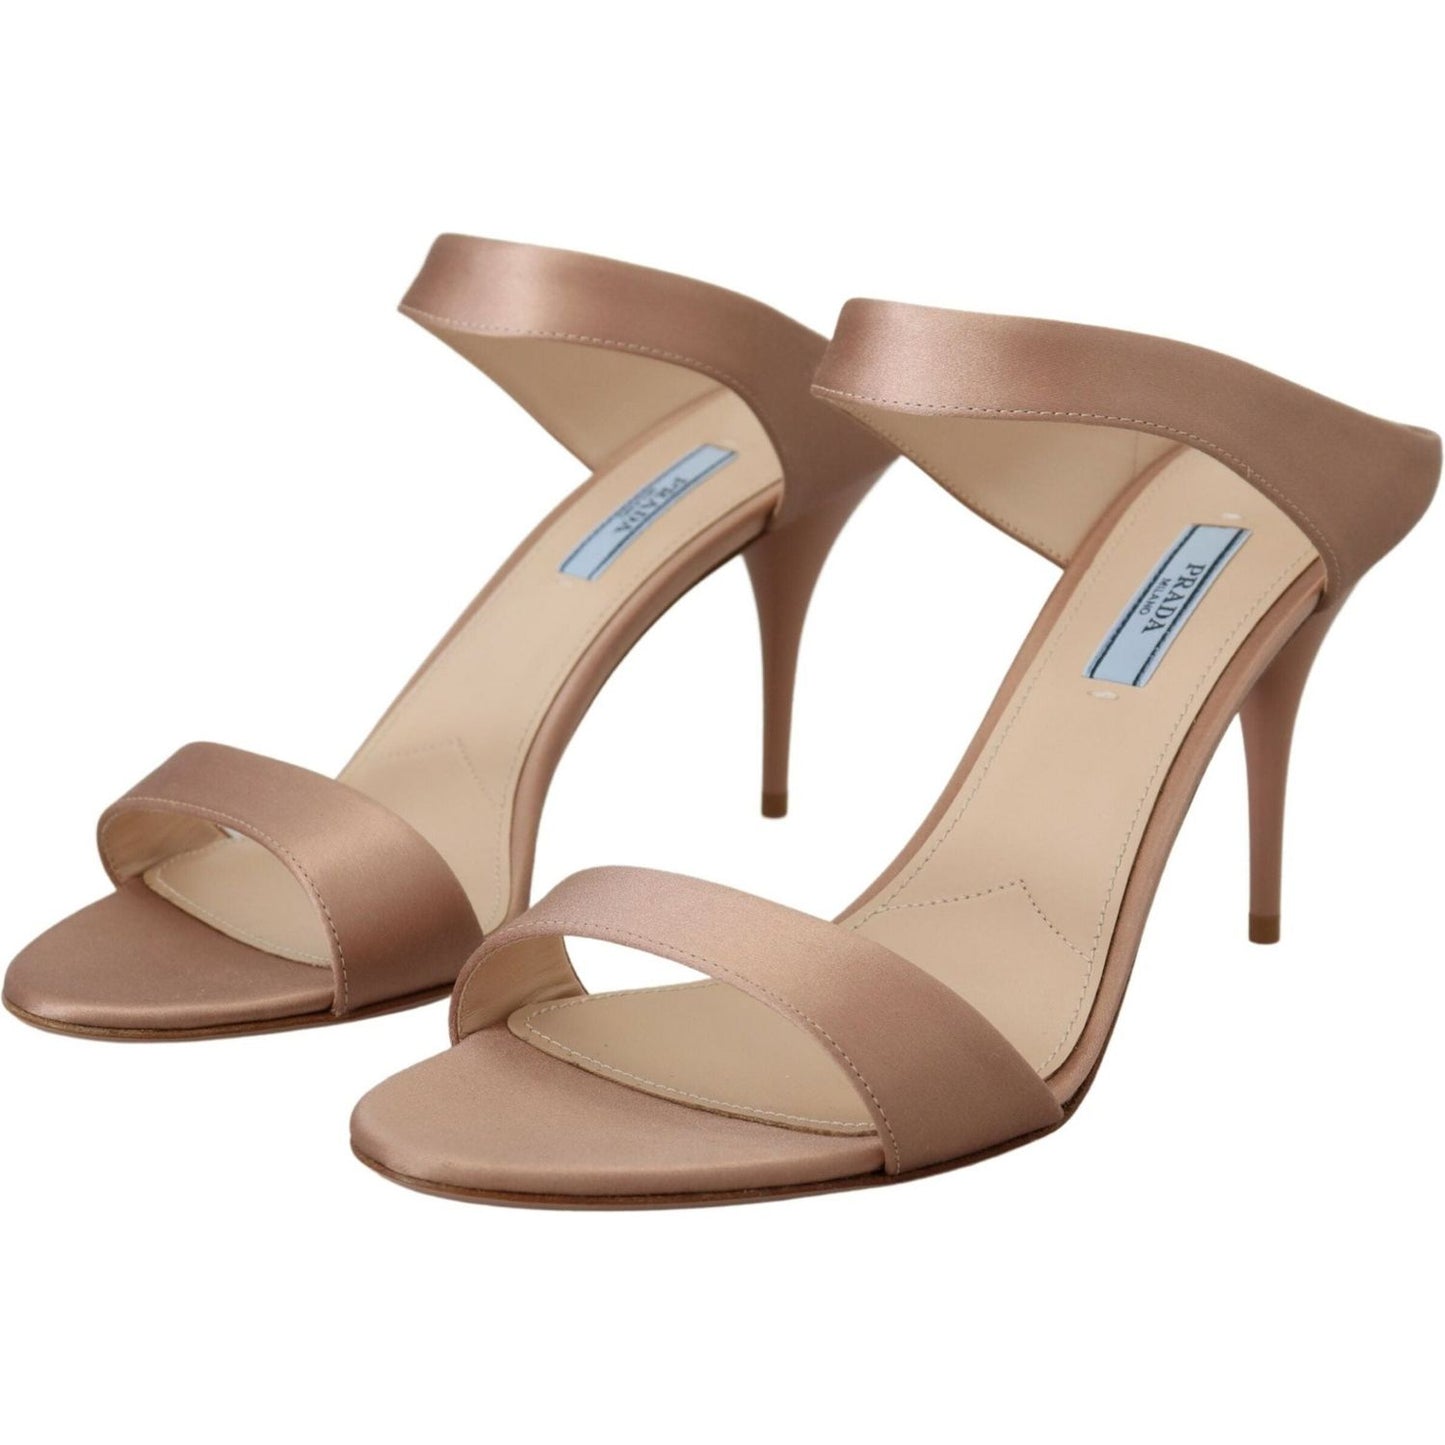 Prada | Glimmering Rose Gold Leather Heels| McRichard Designer Brands   